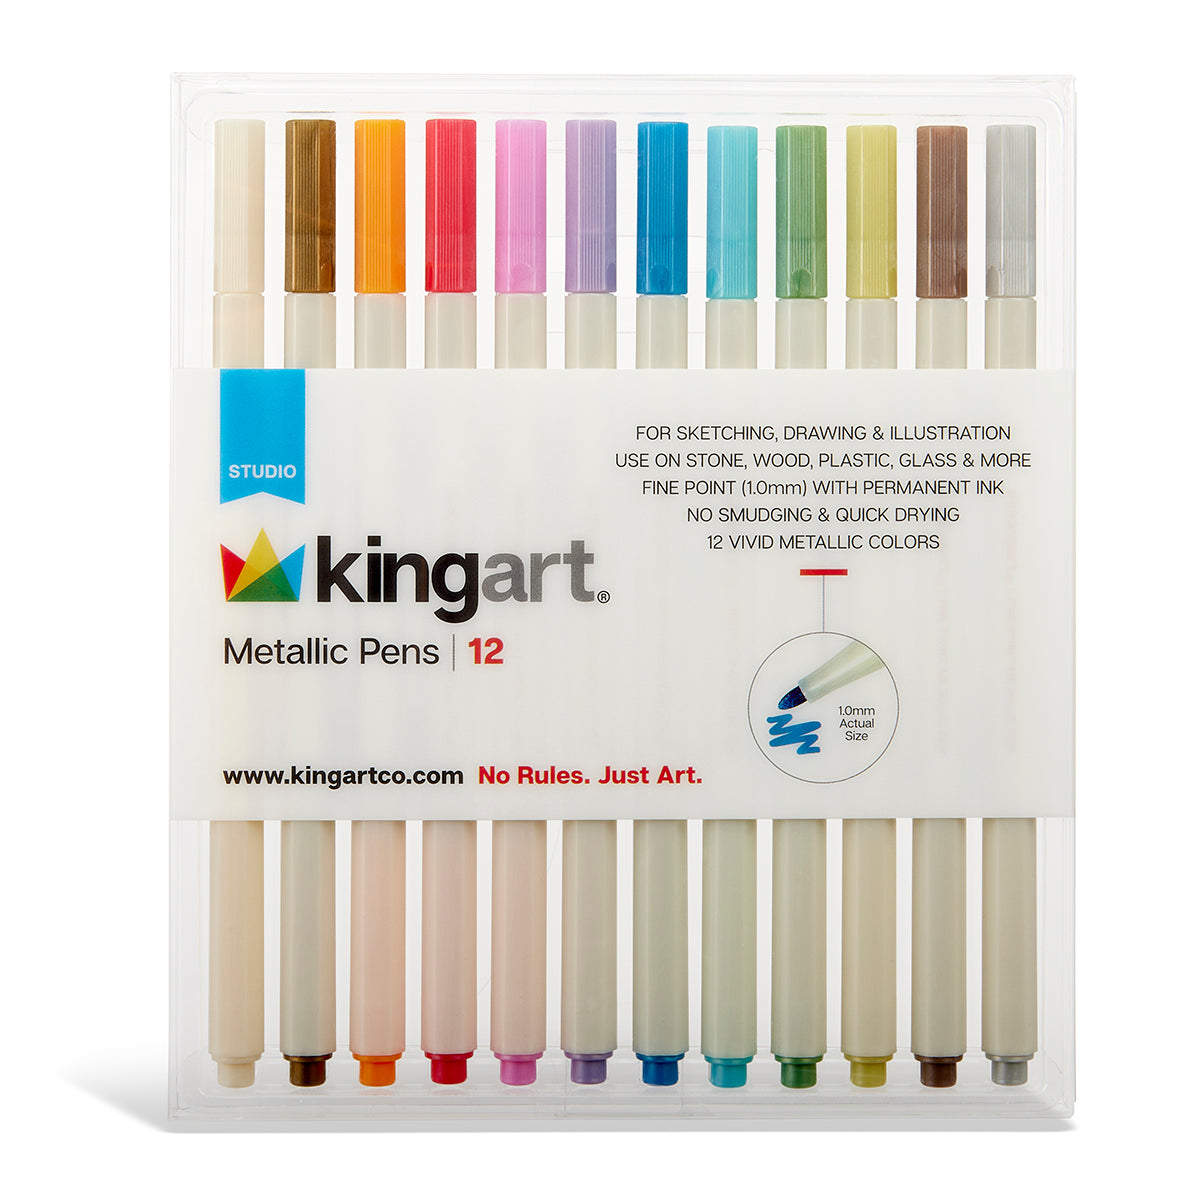 10 Color Waterproof Paint Marker Pens Metallic Color Pen Doodle Art Drawing Markers Outline Pen Set, Size: Default